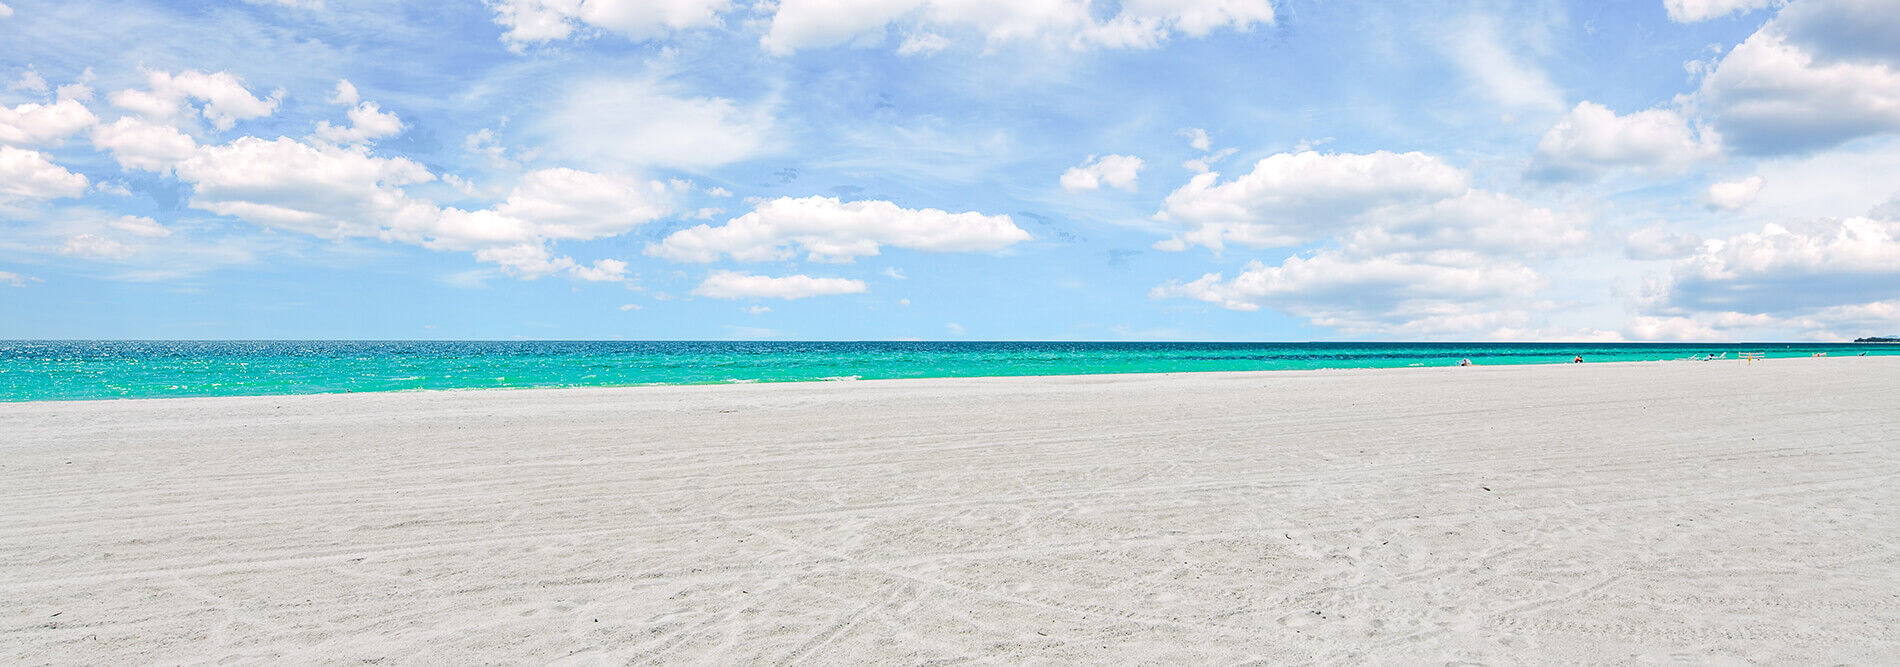 Beautiful white sand beach